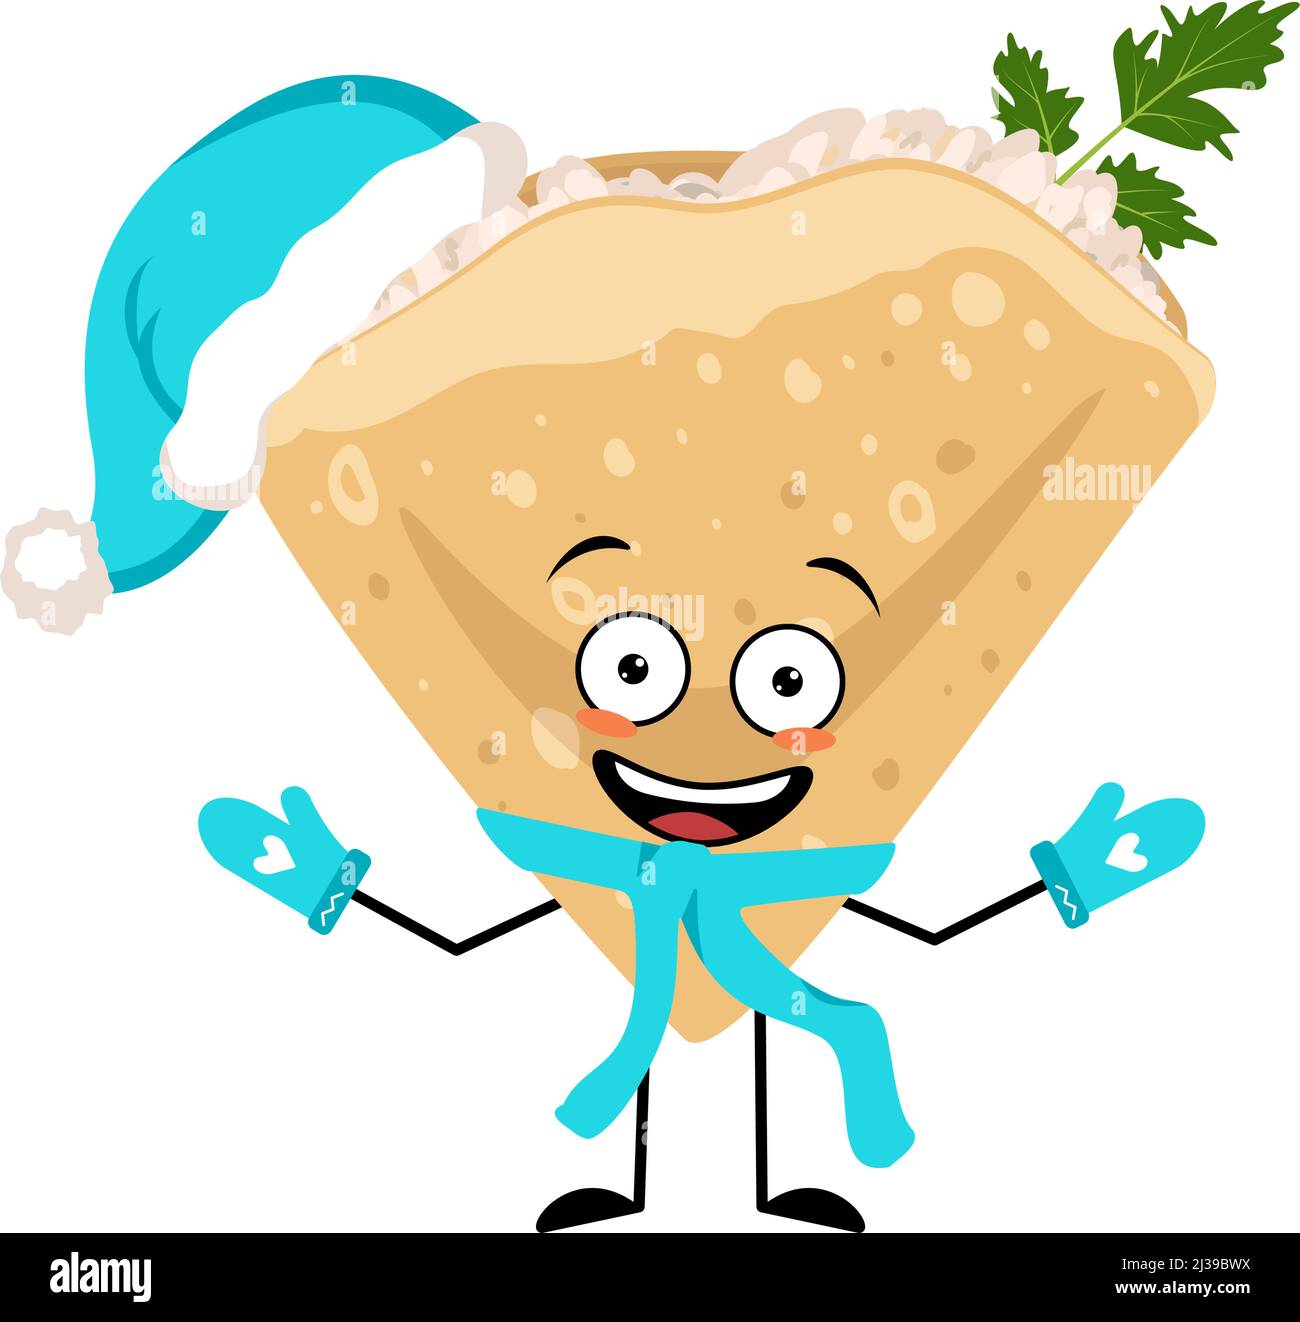 Pancake-Charakter in Weihnachtsmütze mit fröhlicher Emotion, freudigem Gesicht, lächelnden Augen, Armen und Beinen. Backende Person, hausgemachtes Gebäck mit lustigen Ausdruck. Vektorgrafik flach Stock Vektor